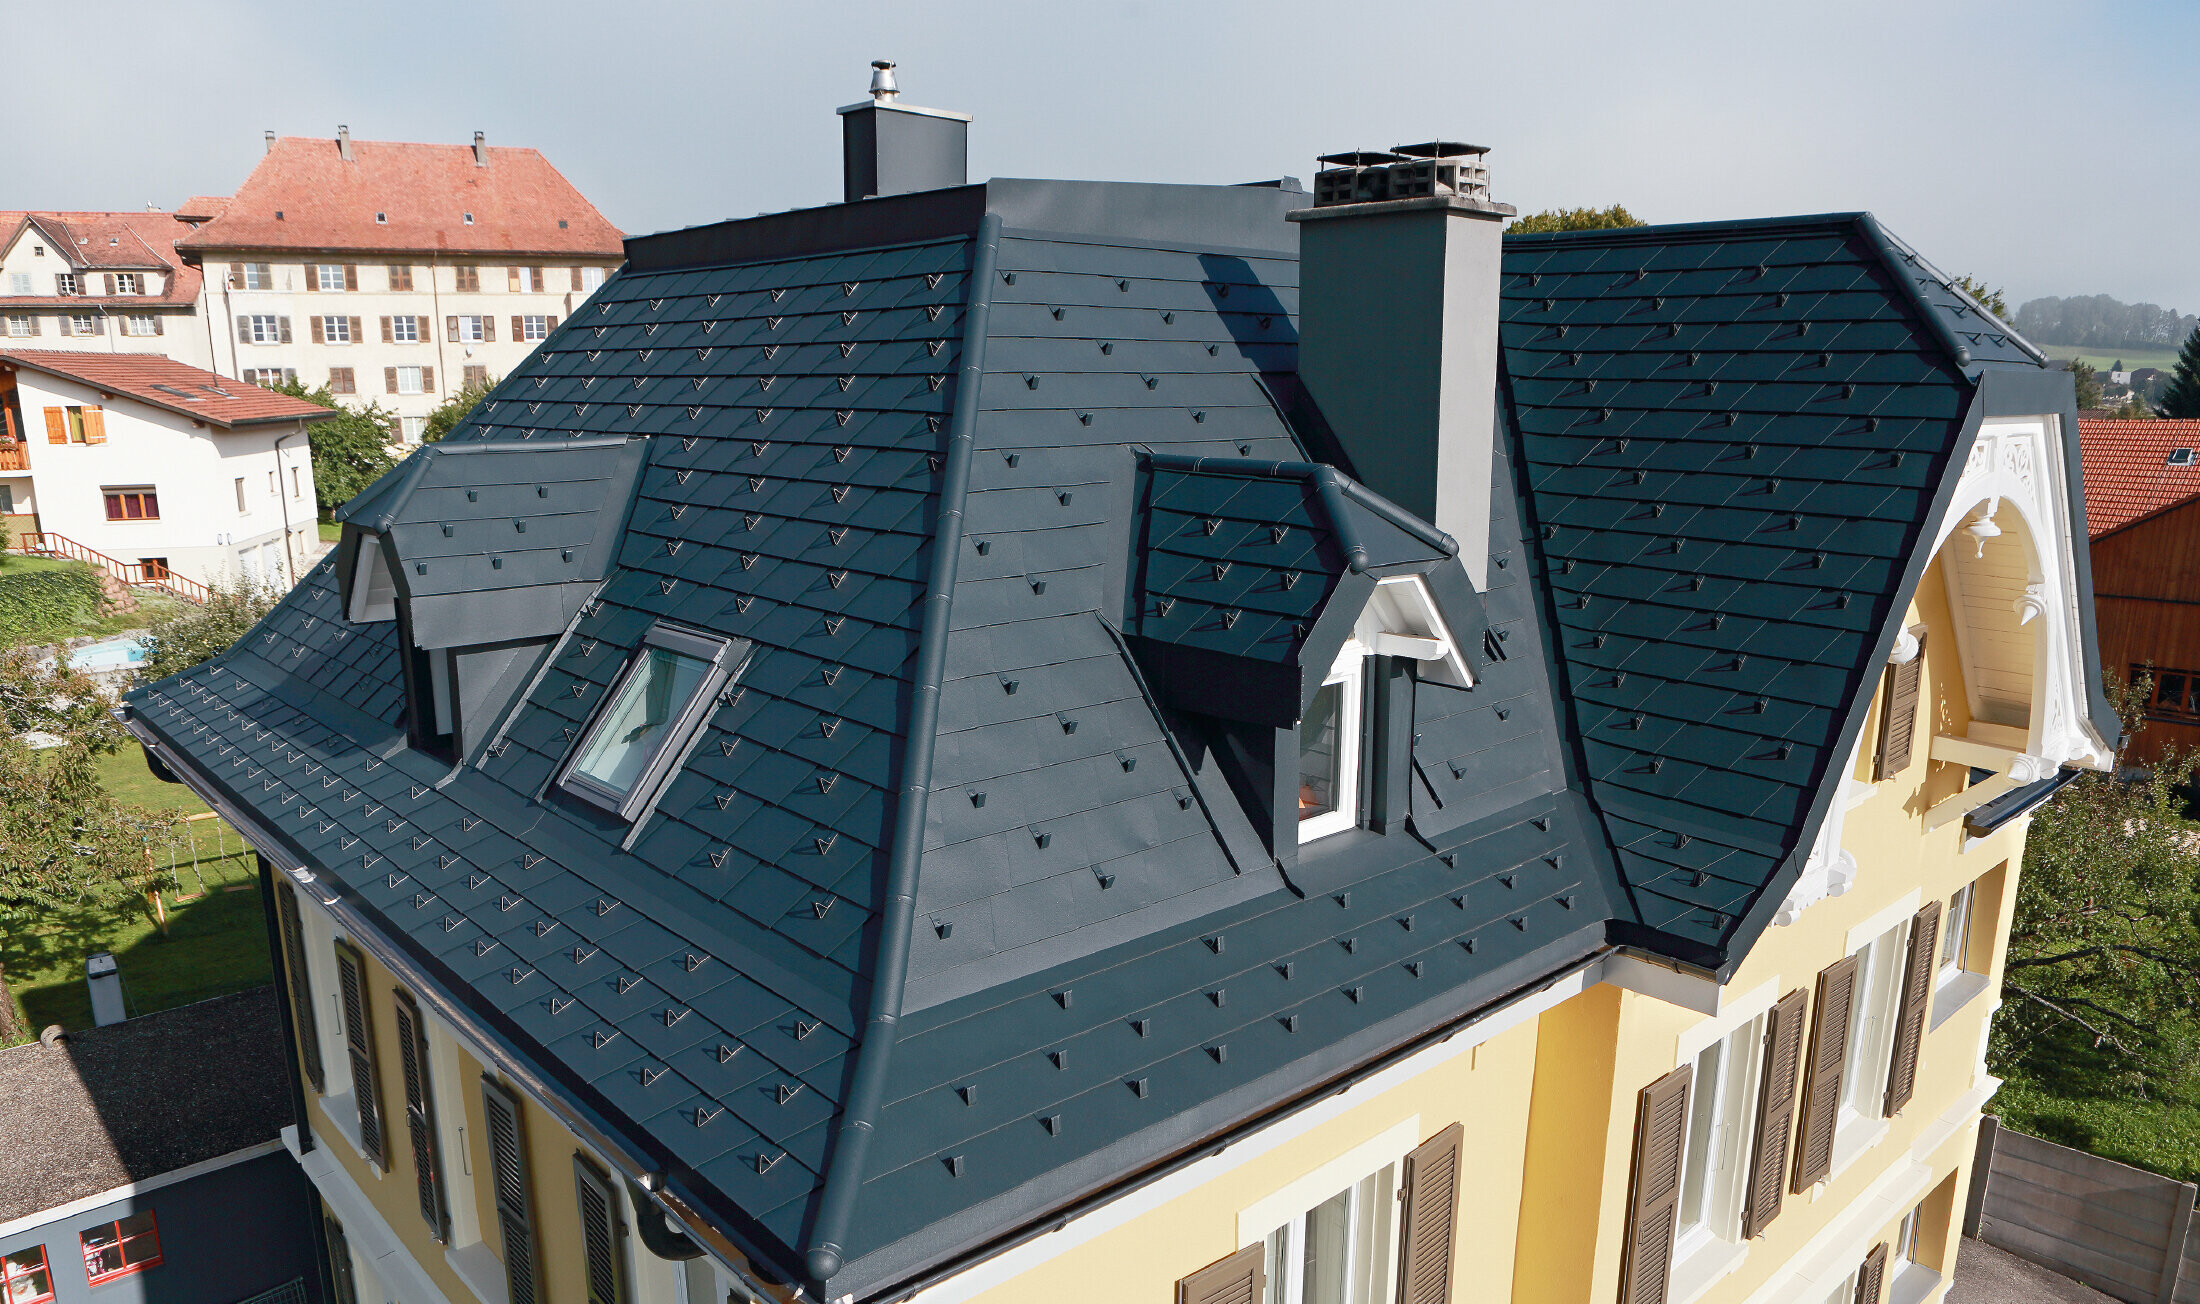 Villa in Zwitserland, het dak heeft veel kielgoten en kleine dakkapellen, het is bekleed met aluminium schindels van PREFA in P.10 antraciet